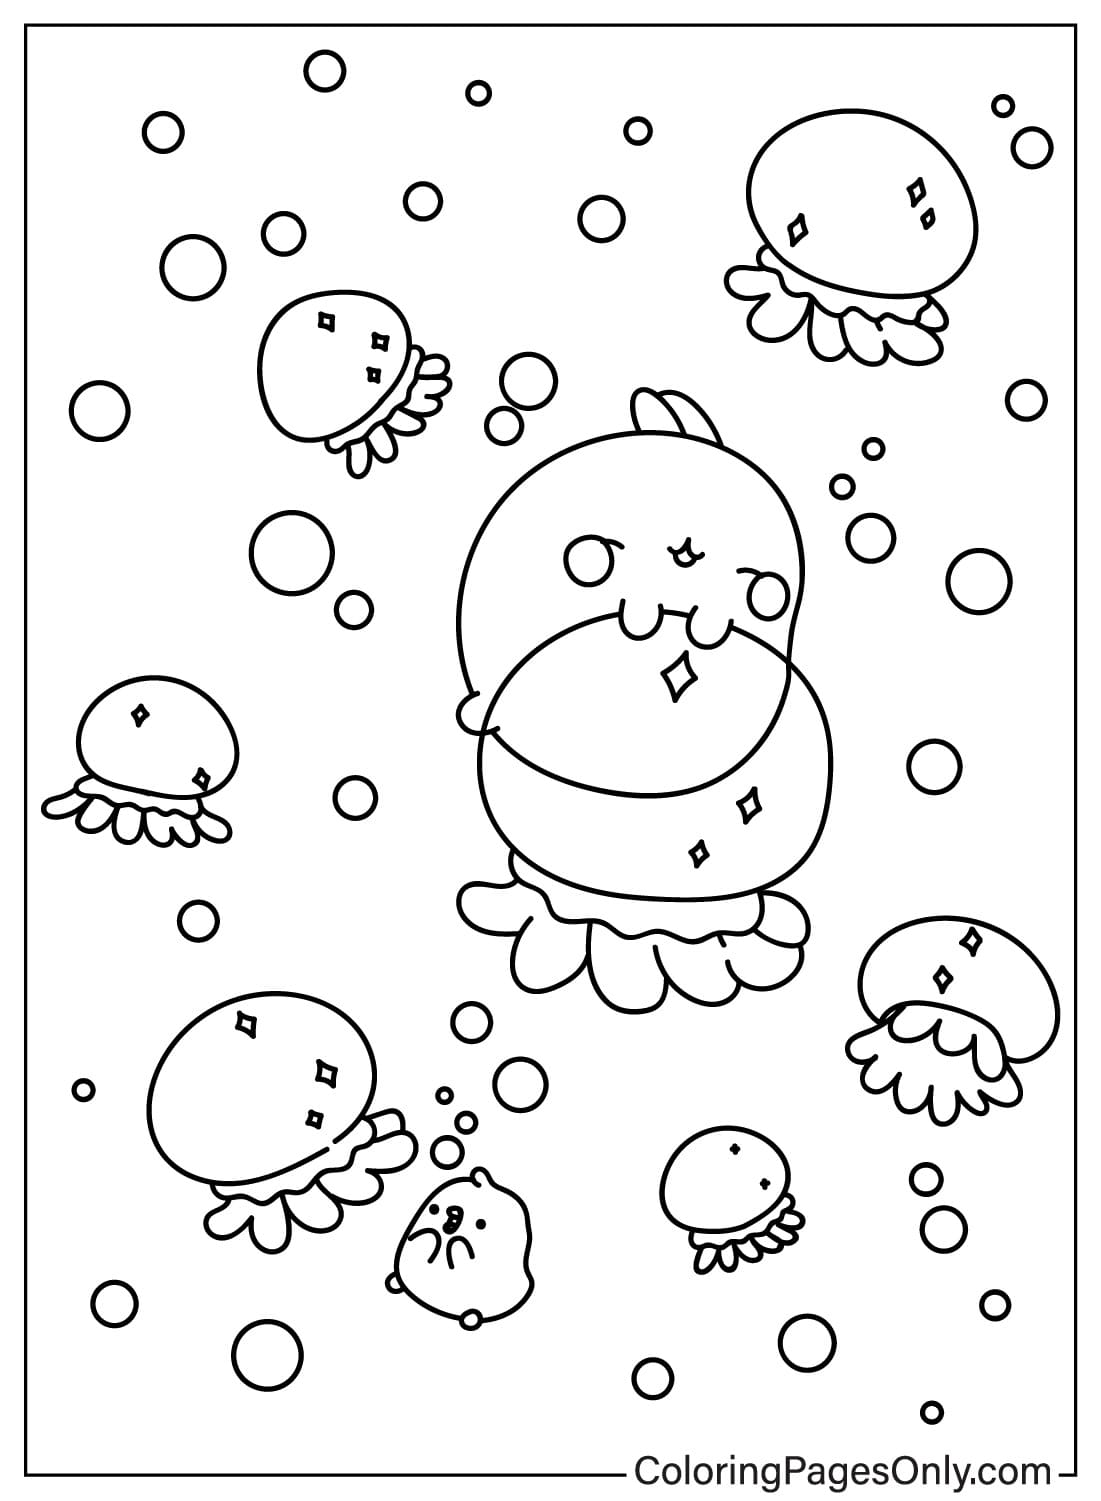 Página para colorear de Molang y Piu Piu con medusas de Molang